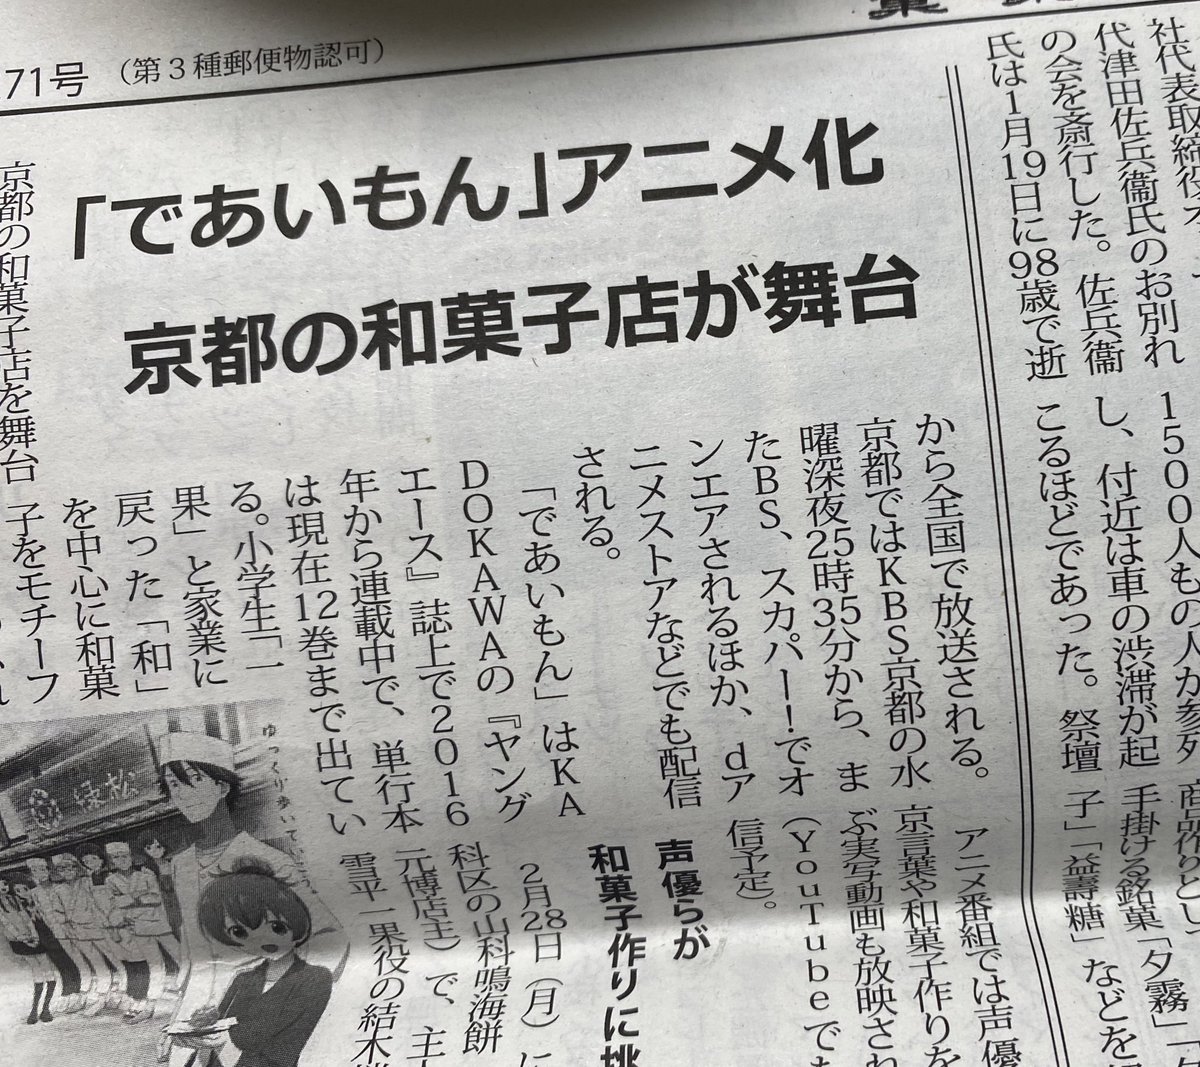 第2271号「菓業食品新聞」の8面にて、先日に撮影があった結木梢さんと鈴木みのりさんの和菓子職人体験の記事が掲載されております。
飛び込みで見学に行った私の様子も書かれております🌰